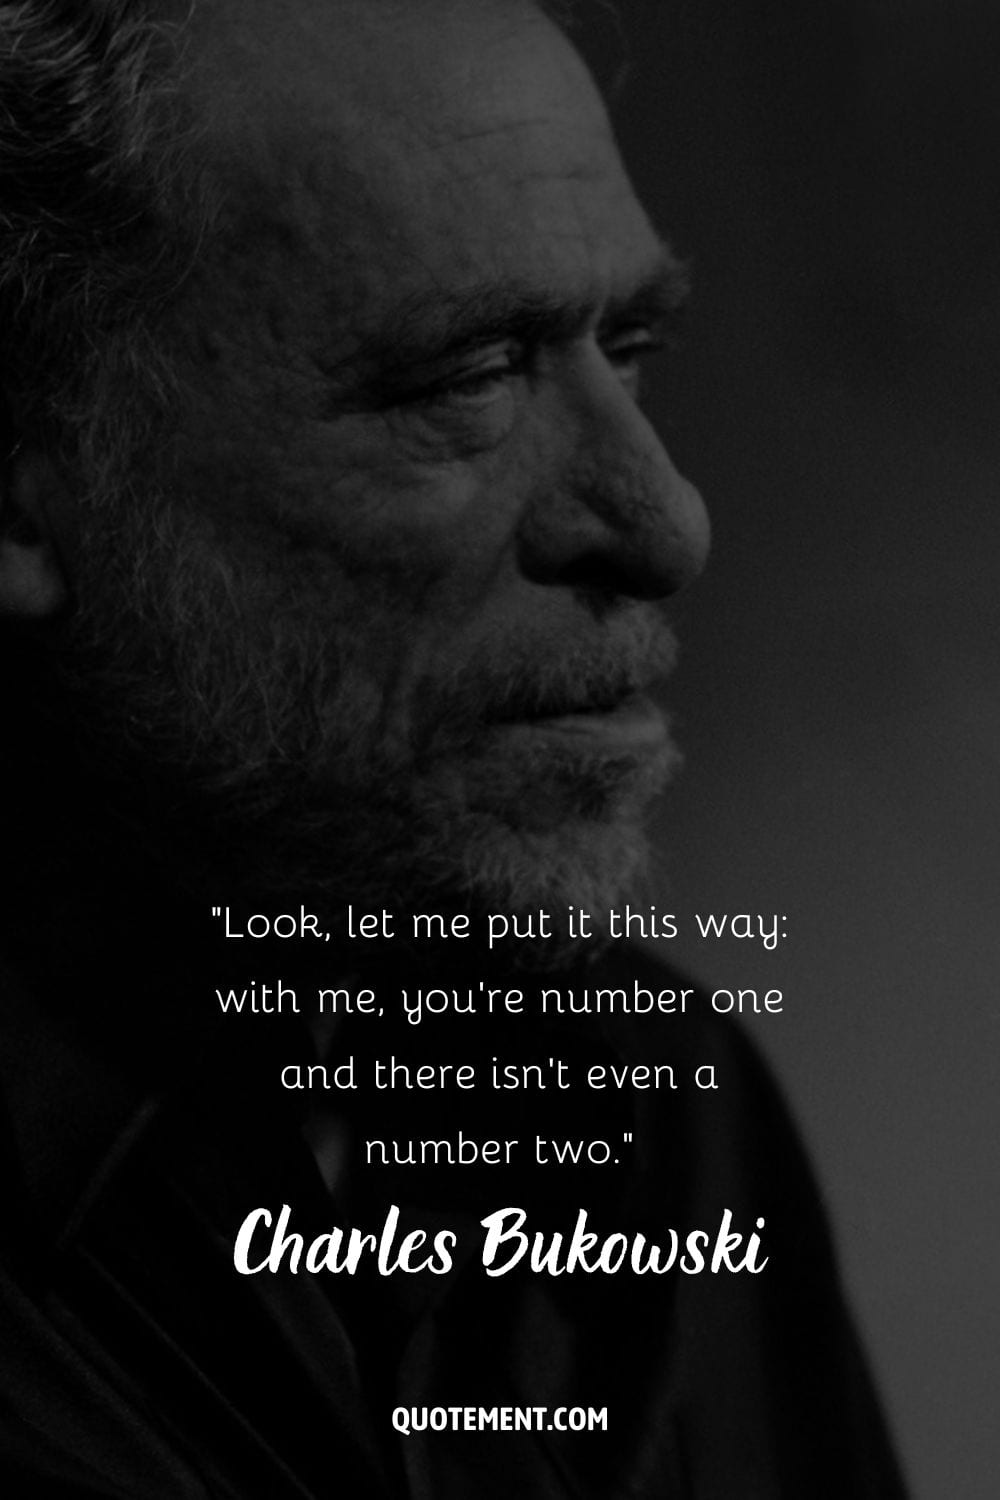 Bukowski's pensive side profile in a portrait